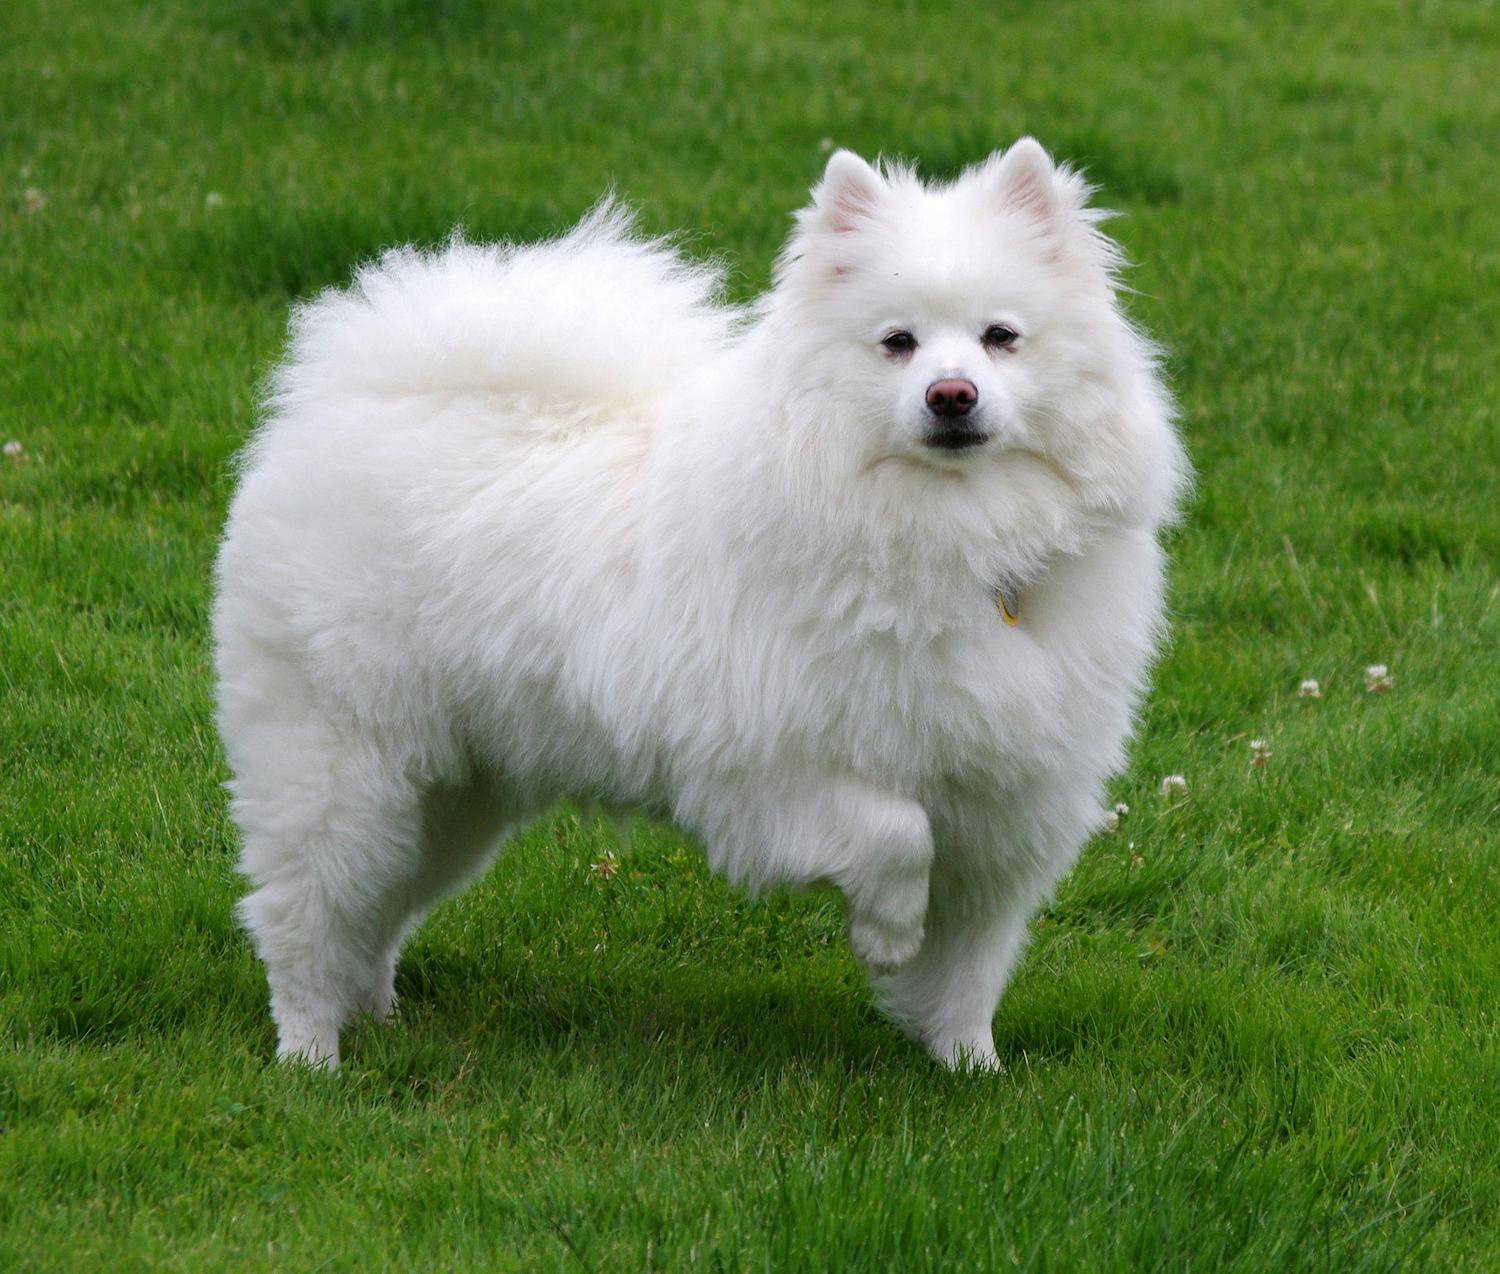 Secondary image of American Eskimo Dog dog breed